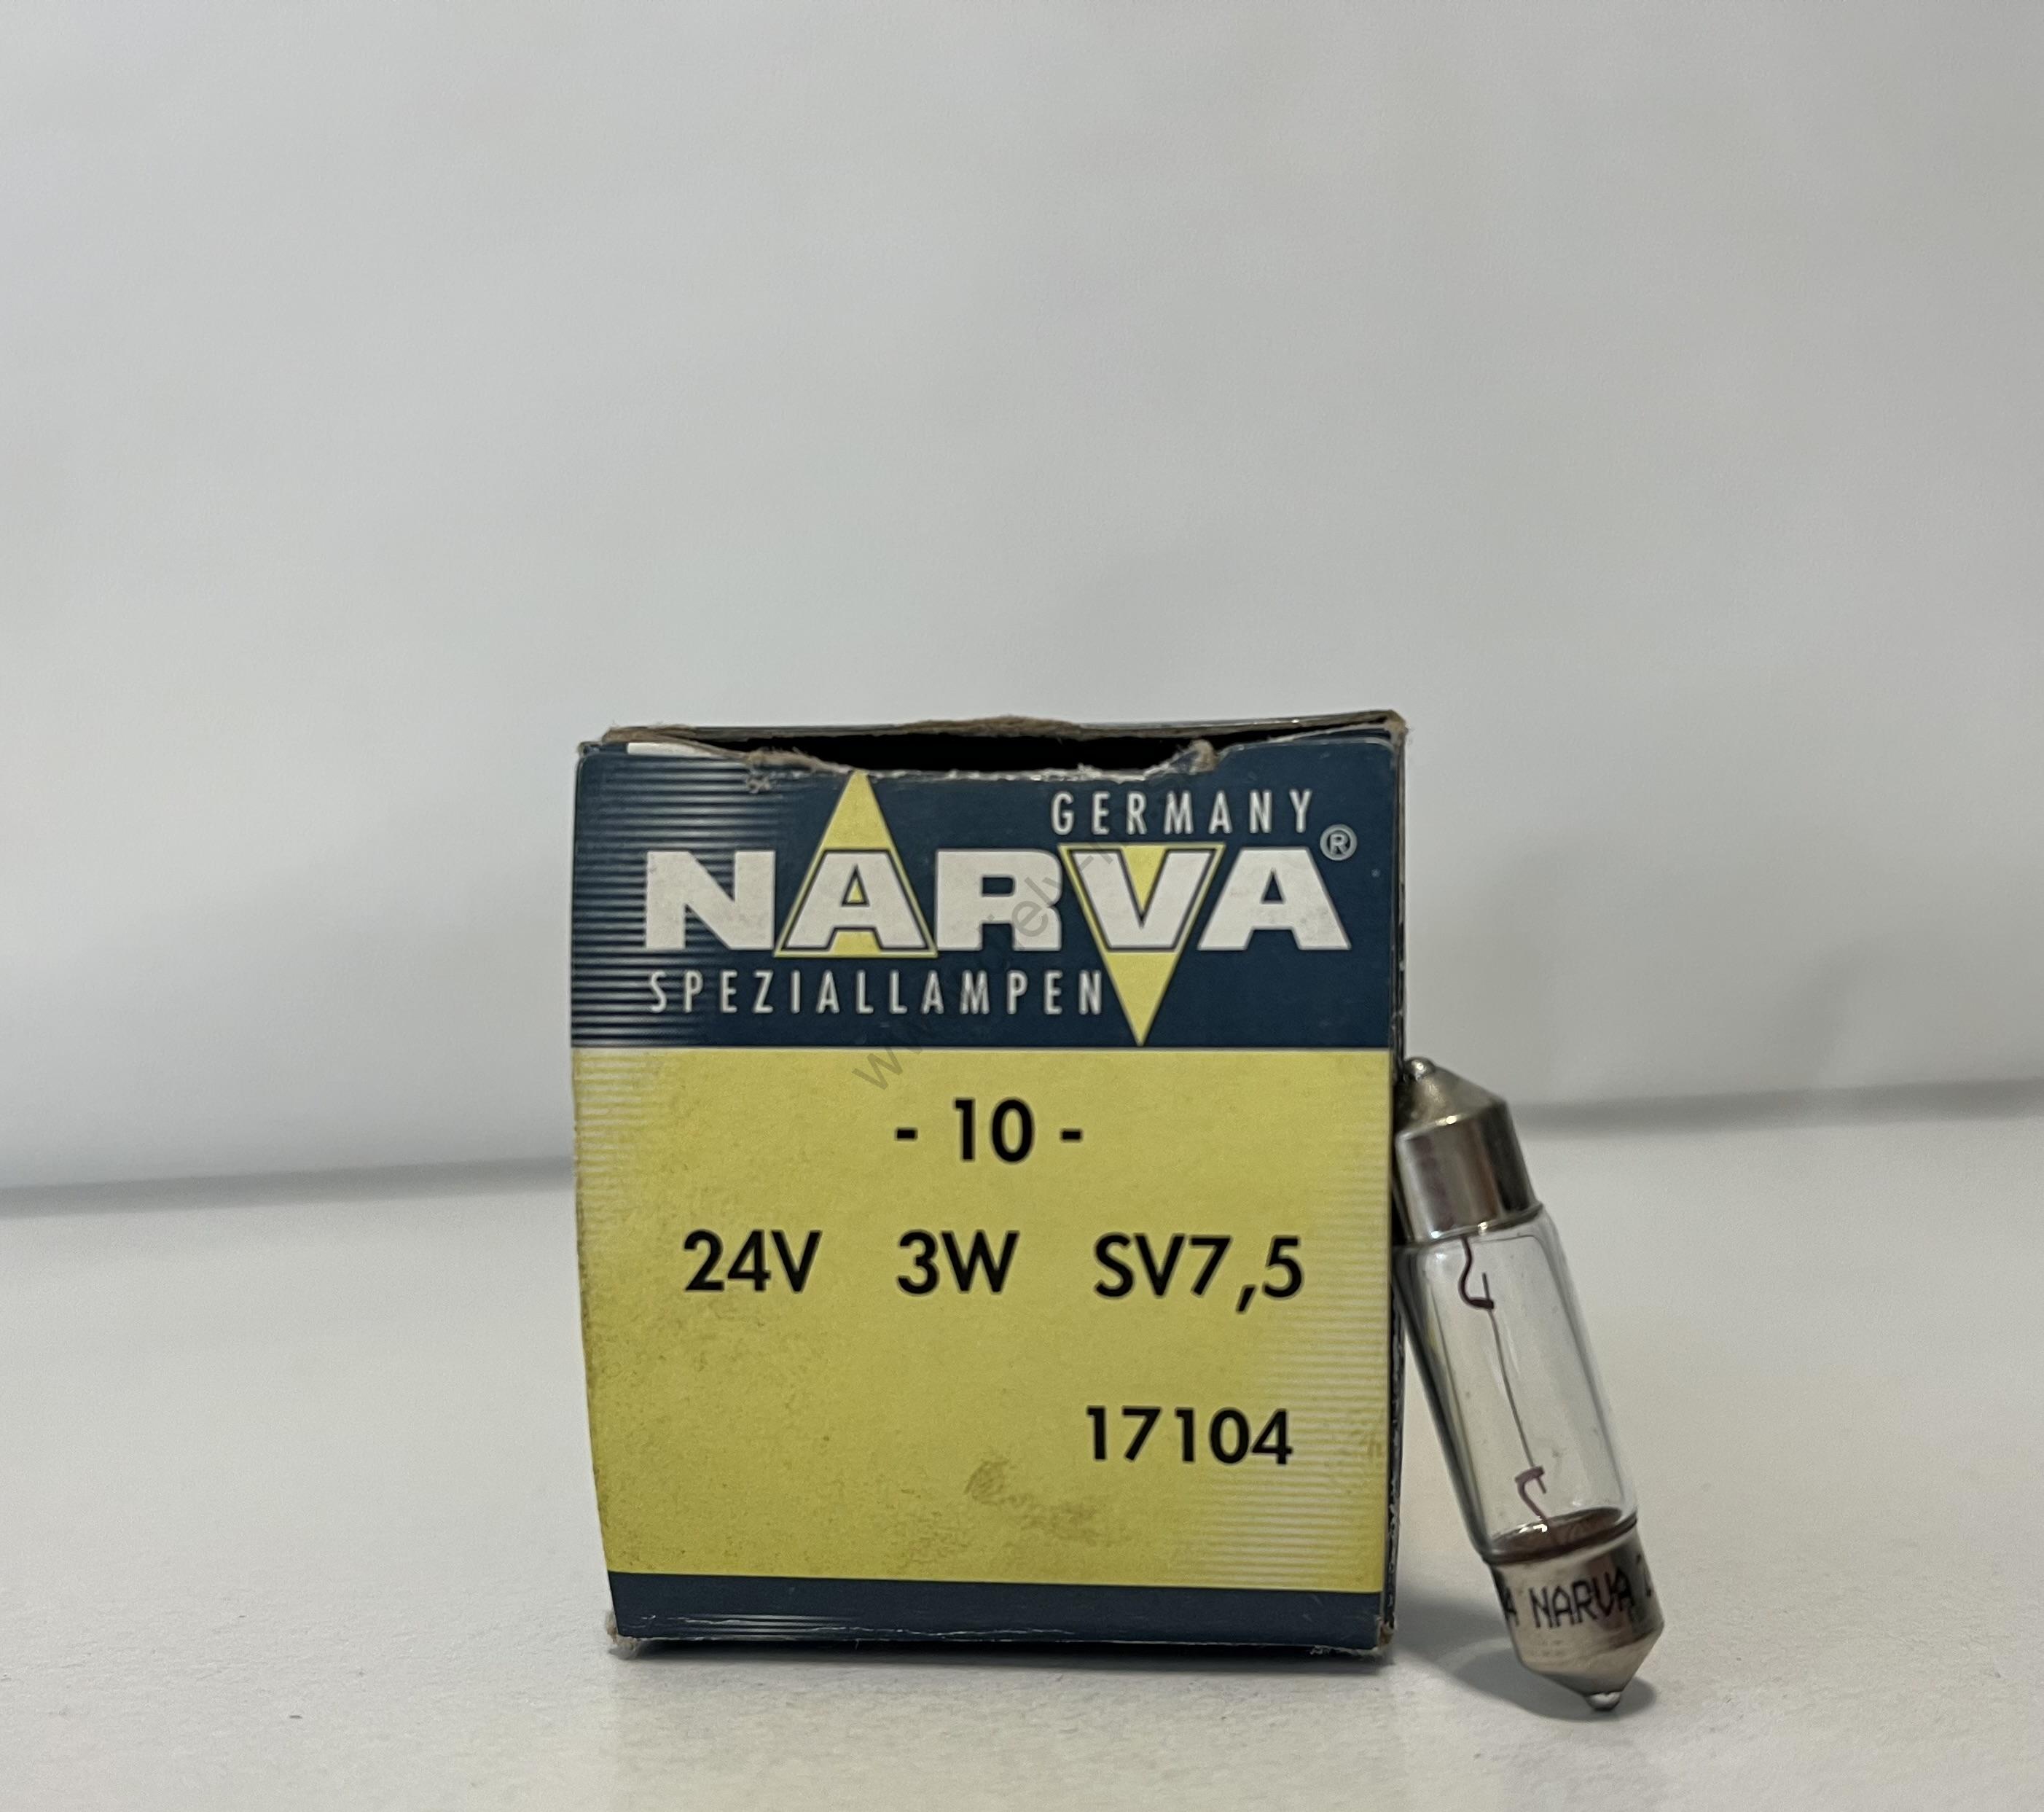 NARVA 24V 3W SV7,5